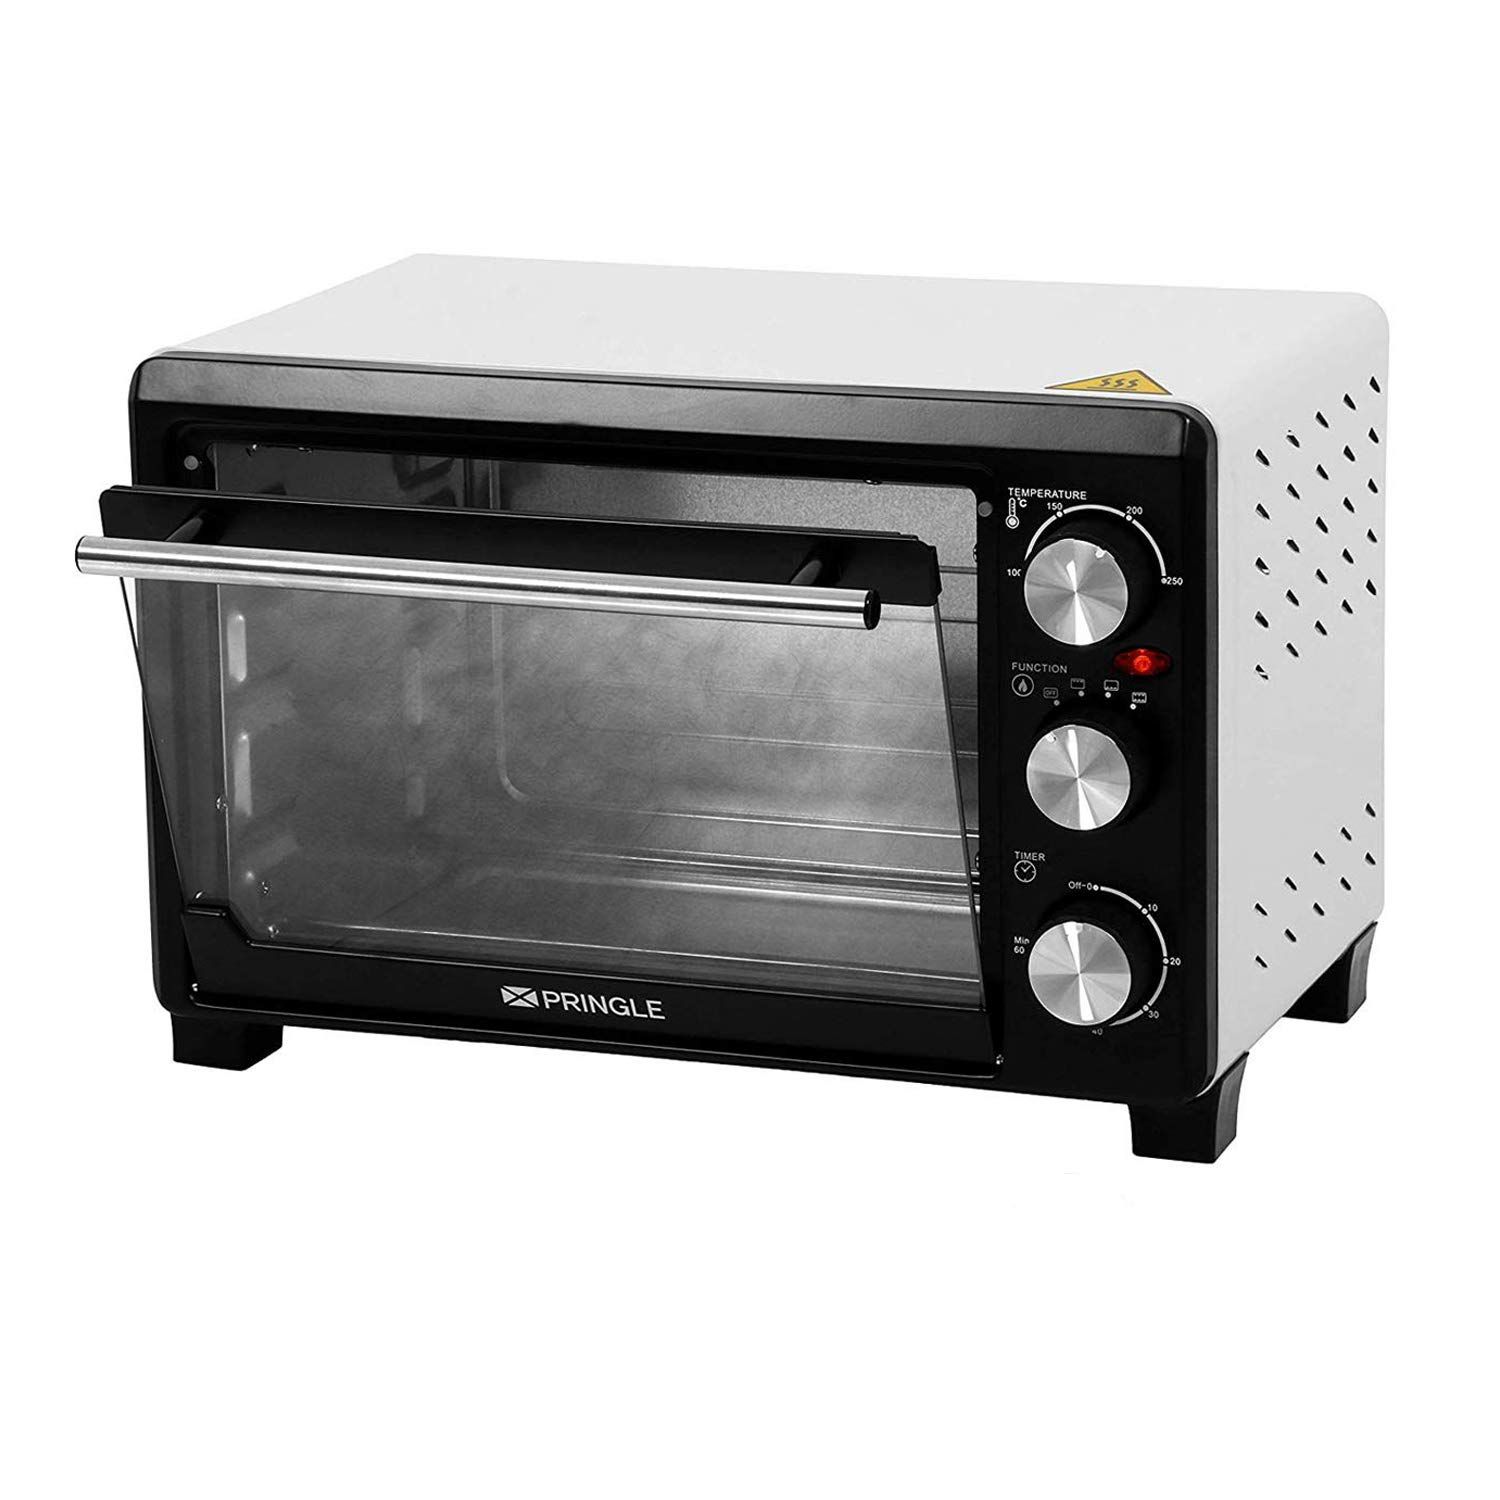 Pringle Oven Toaster Griller 21L Capacity- OTG24 (White)